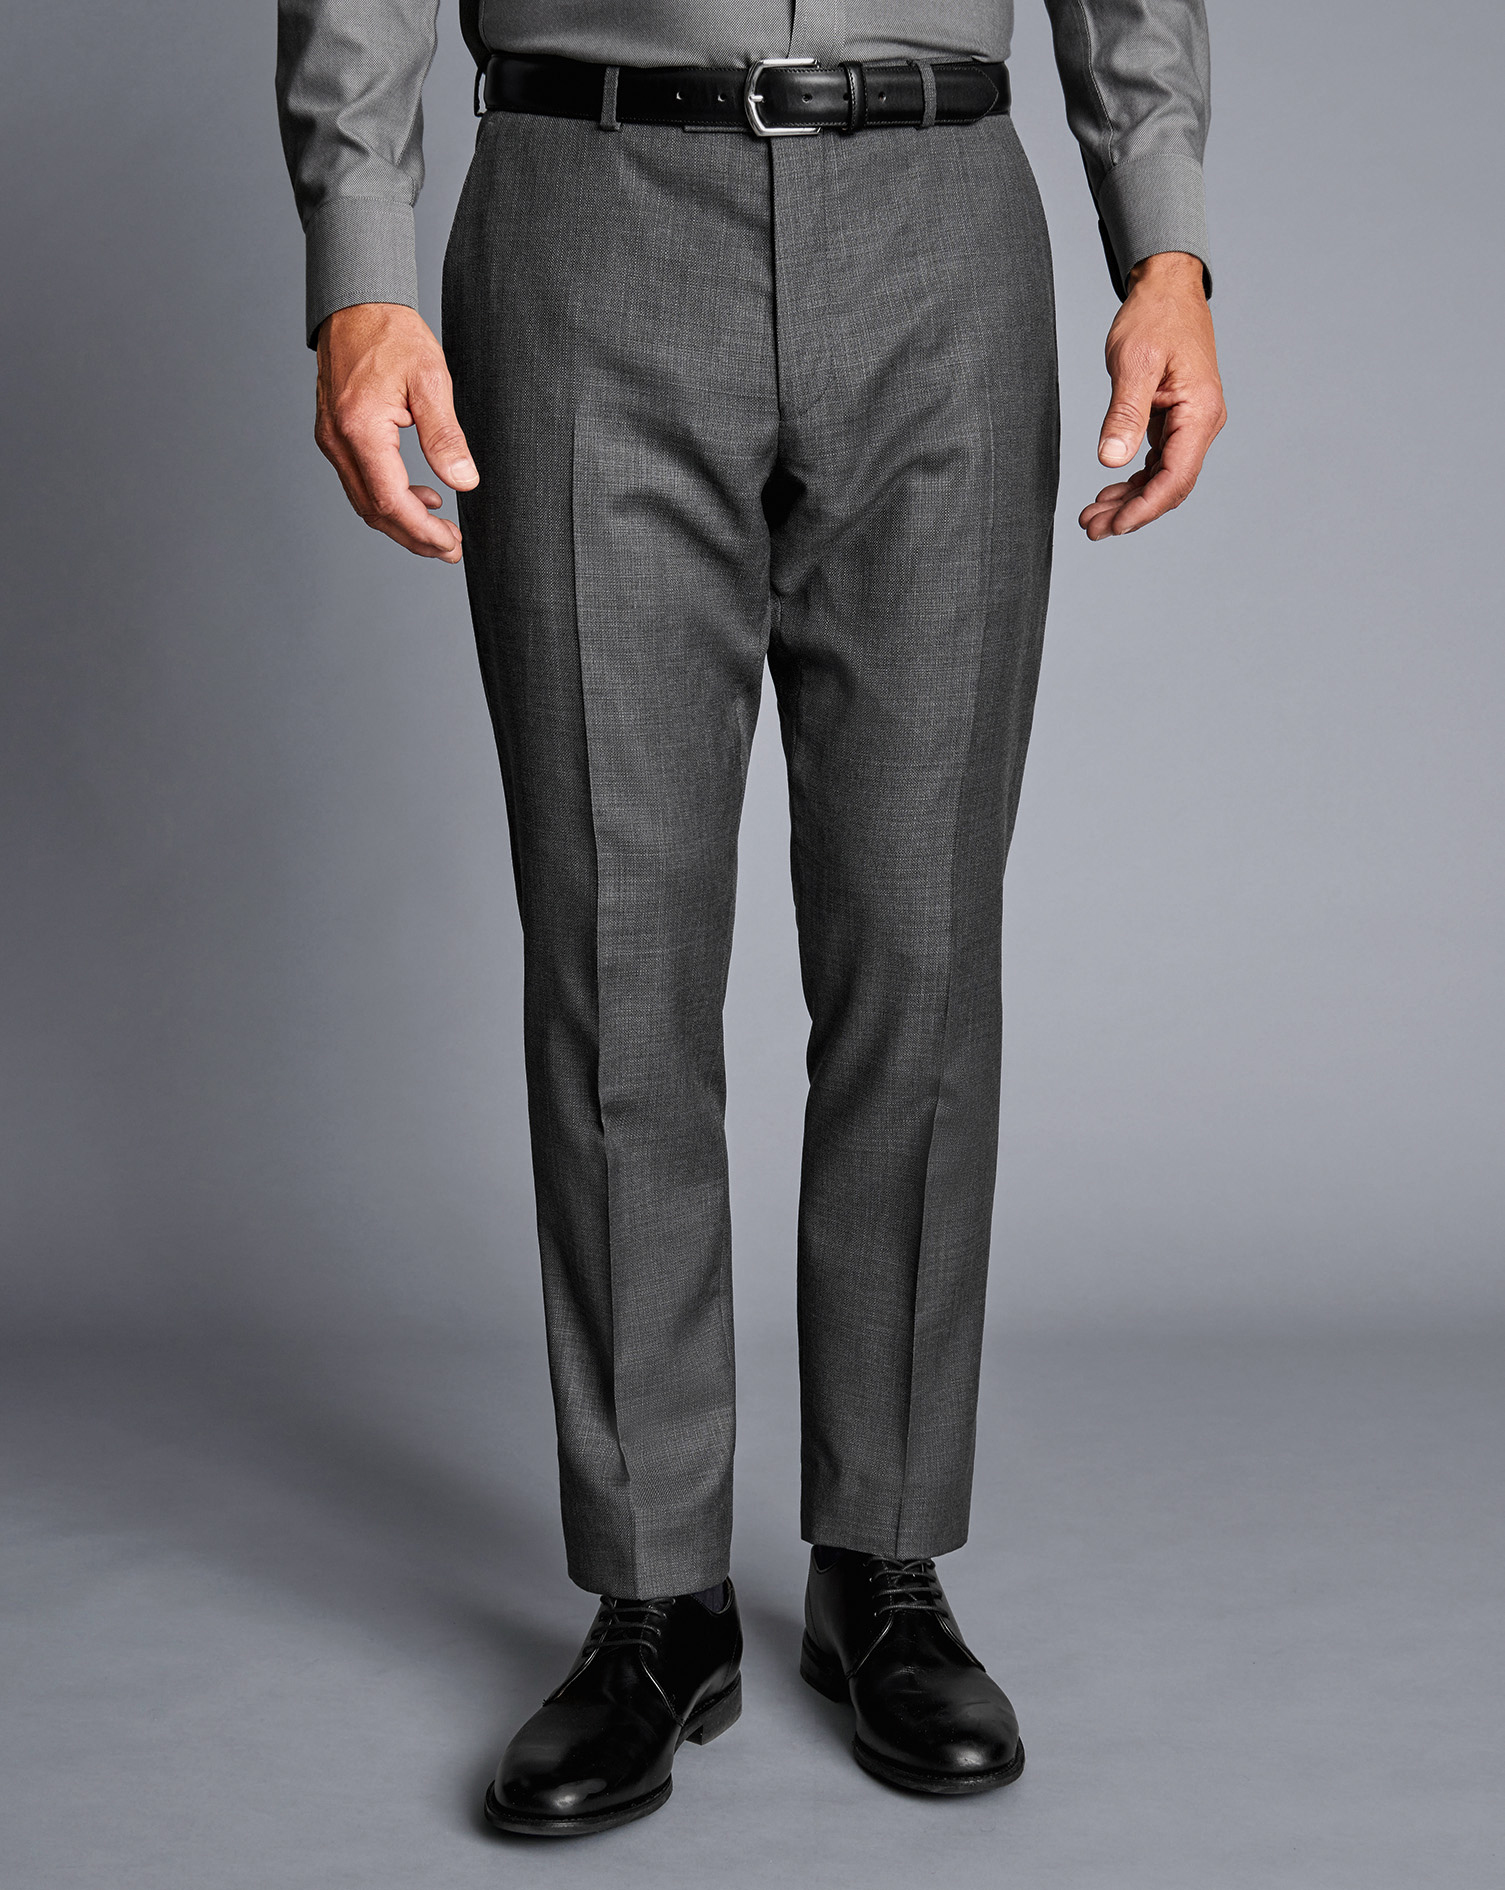 Men's Charles Tyrwhitt Italian Luxury Suit Trousers - Grey Size 32/38 Wool
